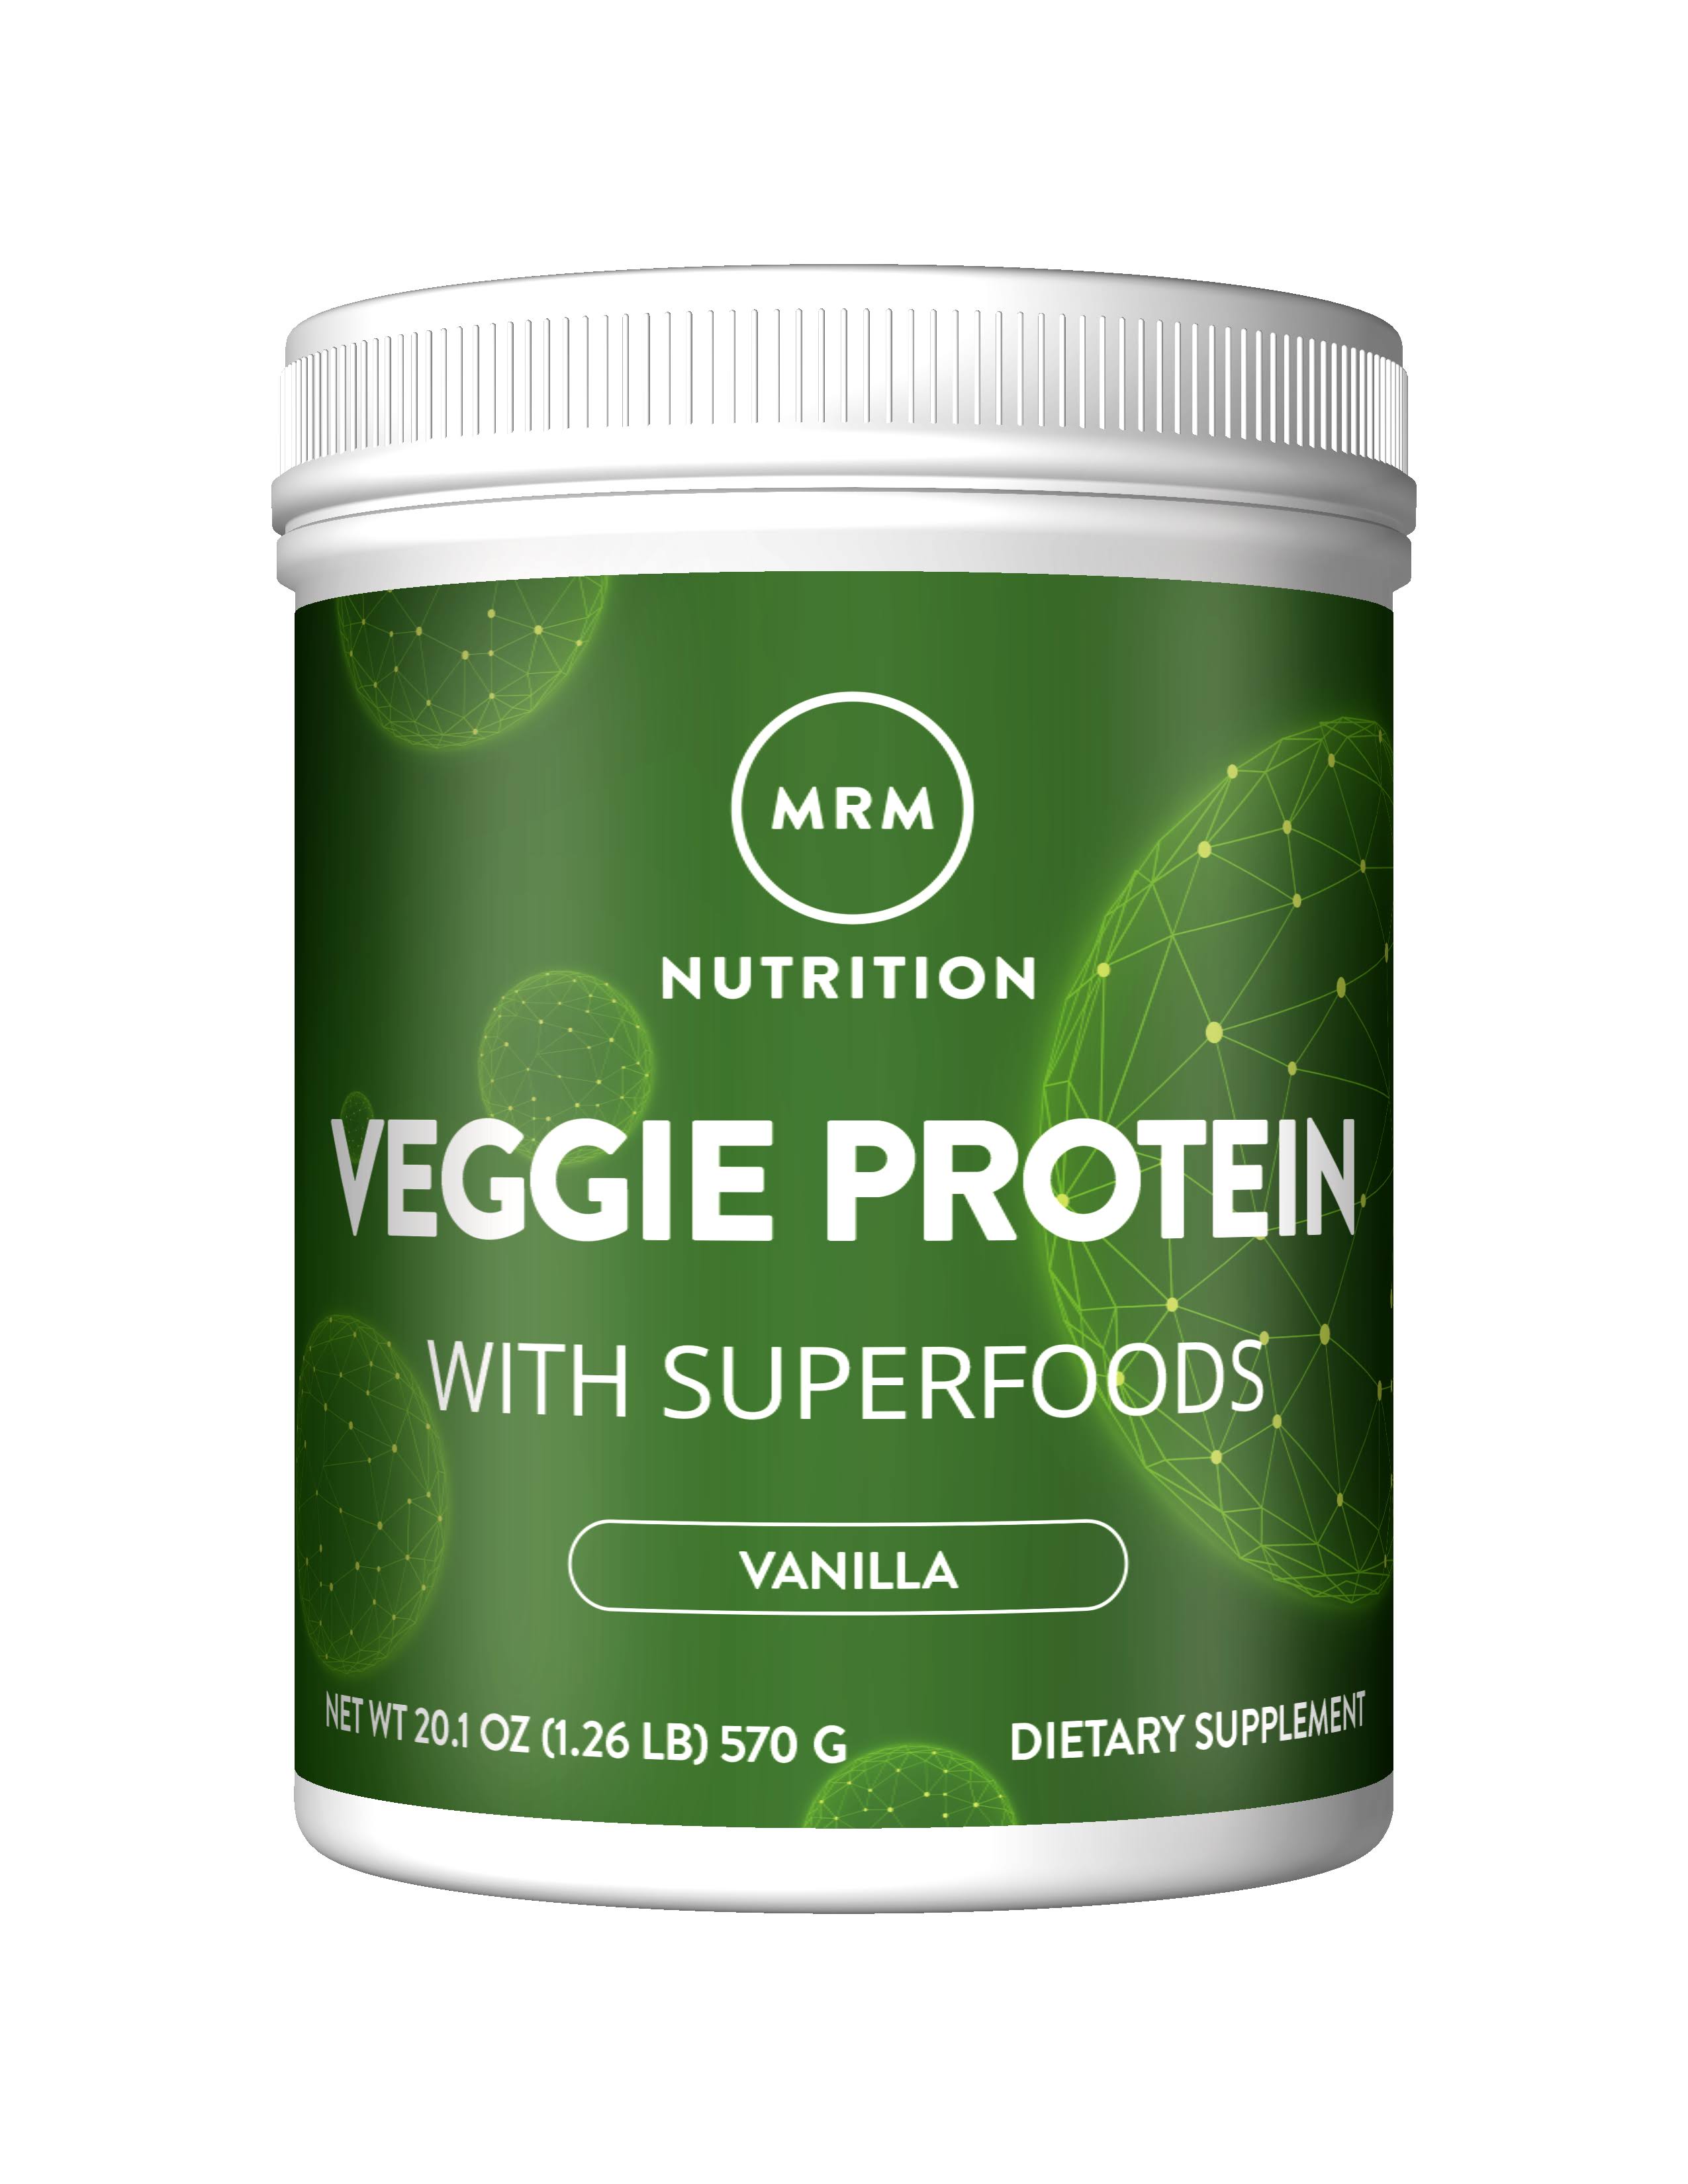 MRM Veggie Protein Nutritional Supplement - Vanilla, 570g